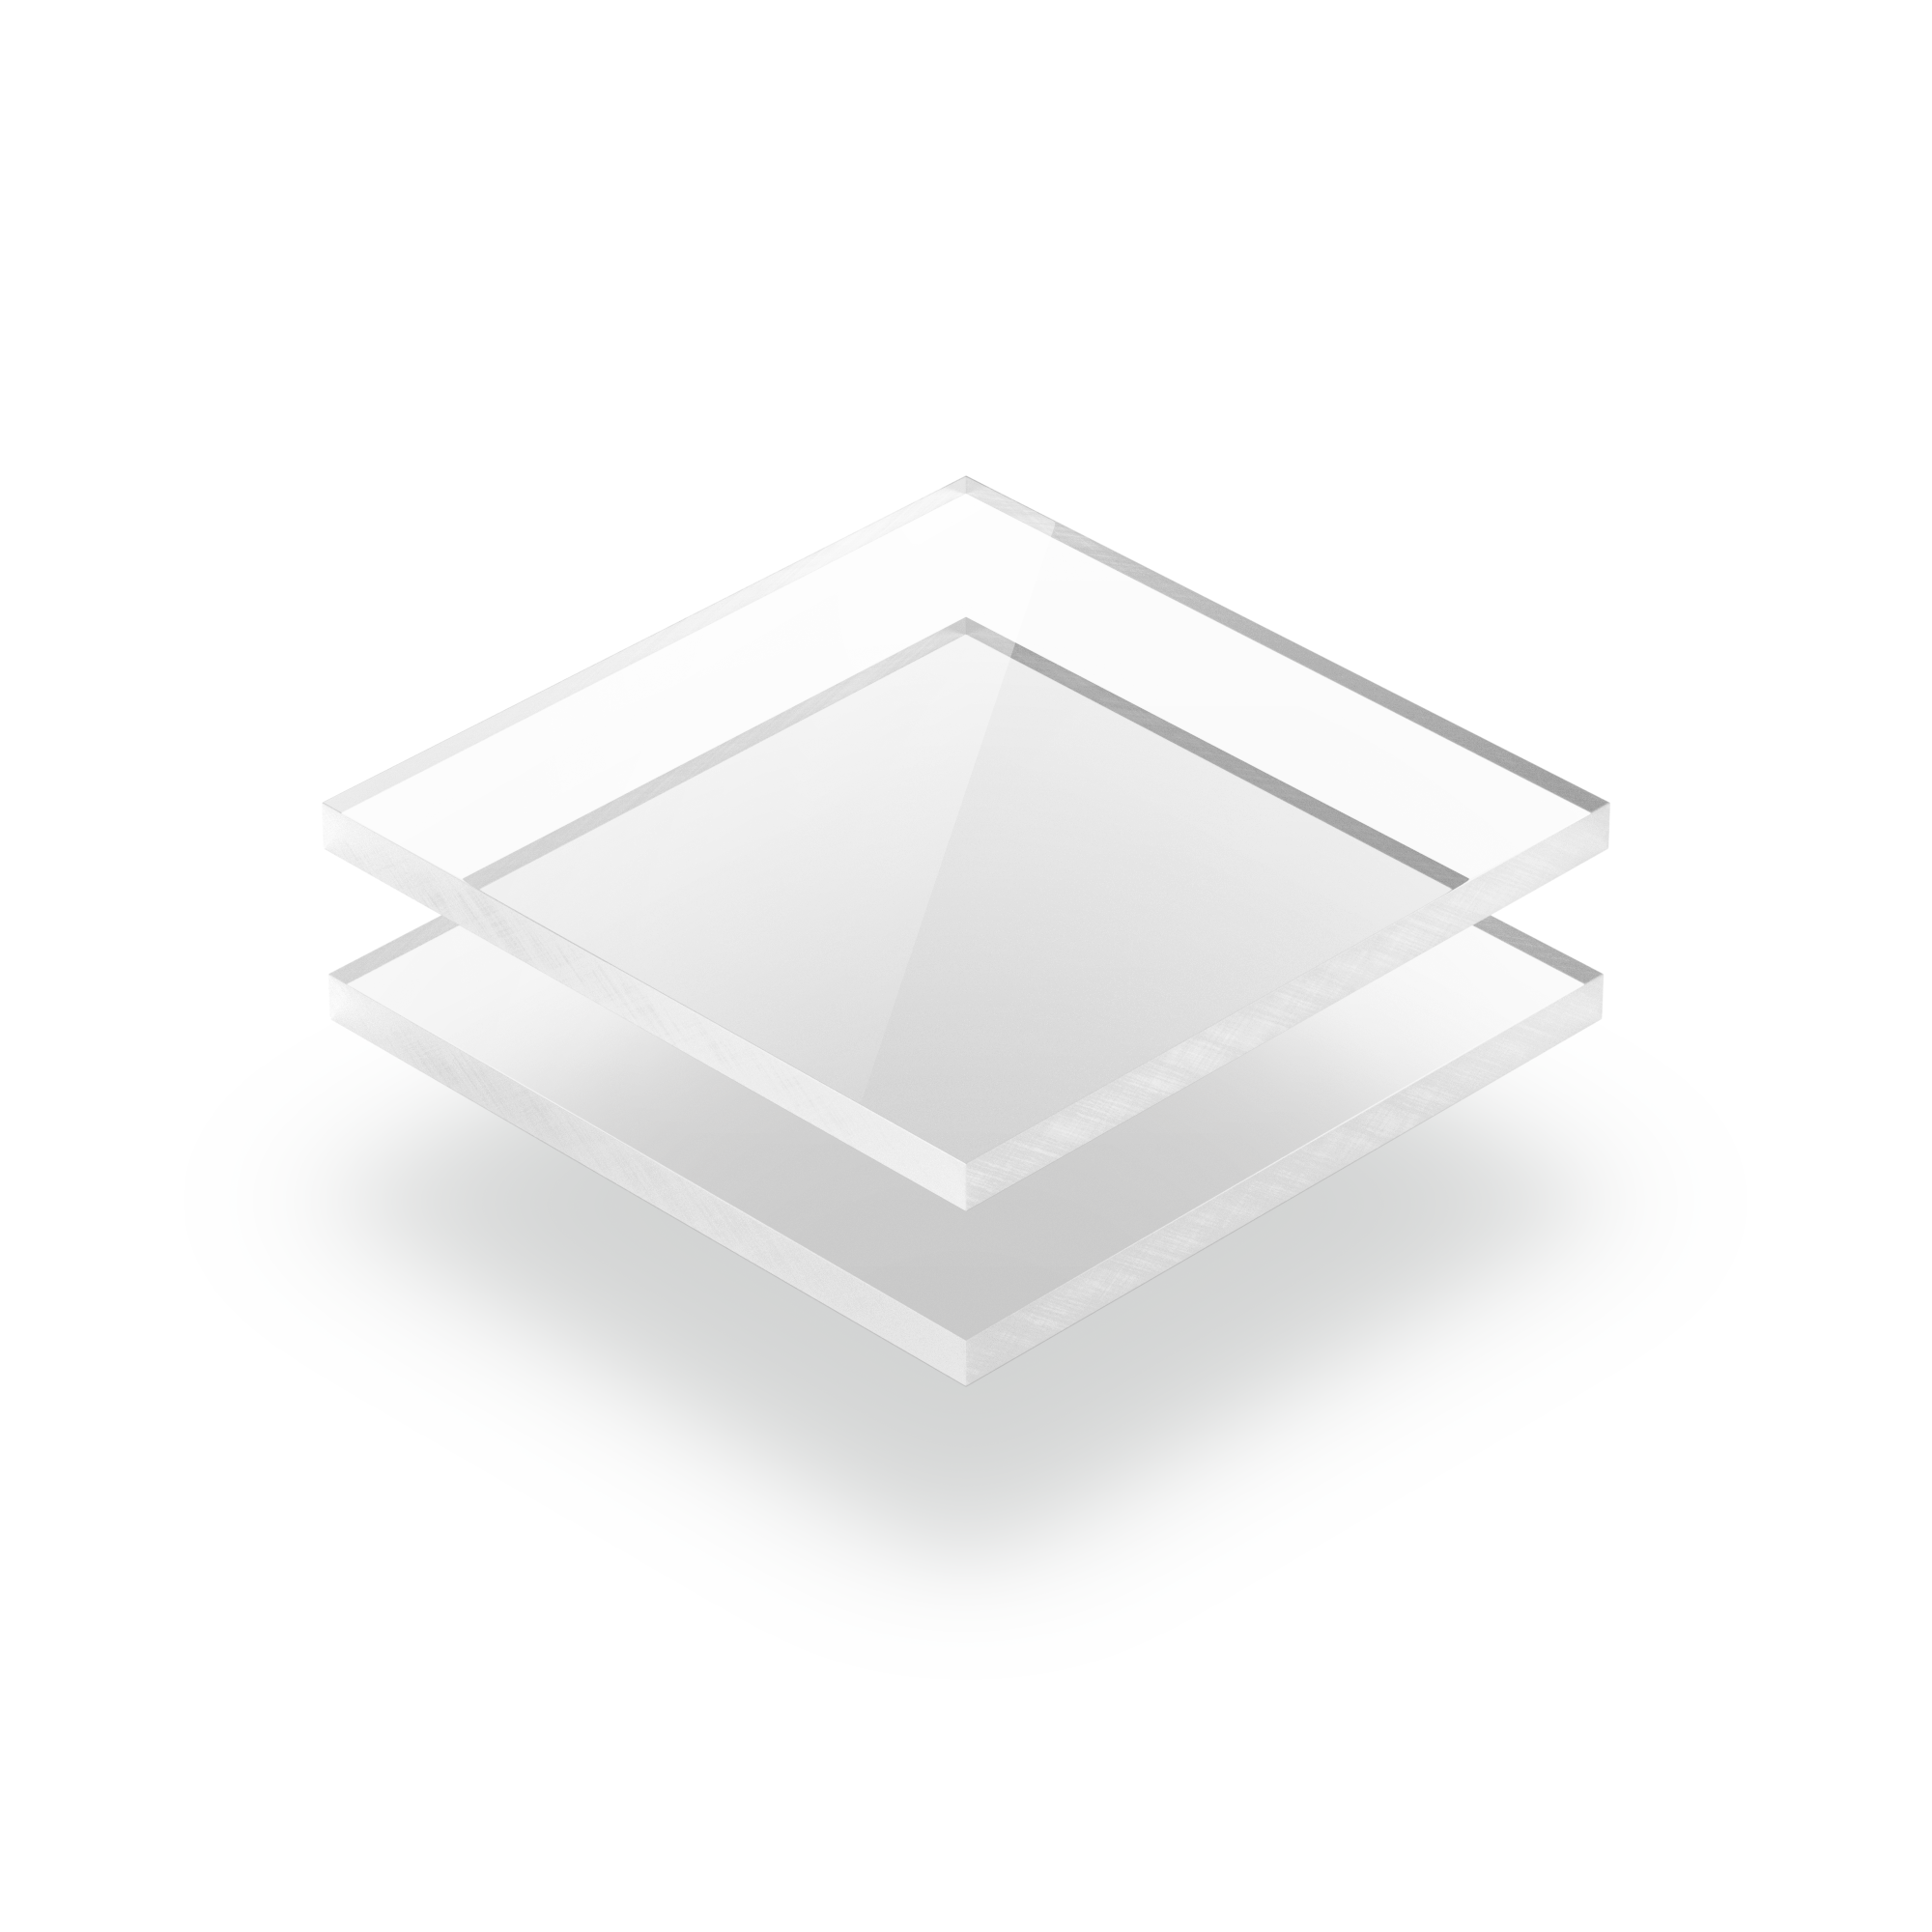 Plexiglass transparent 5mm extrudé